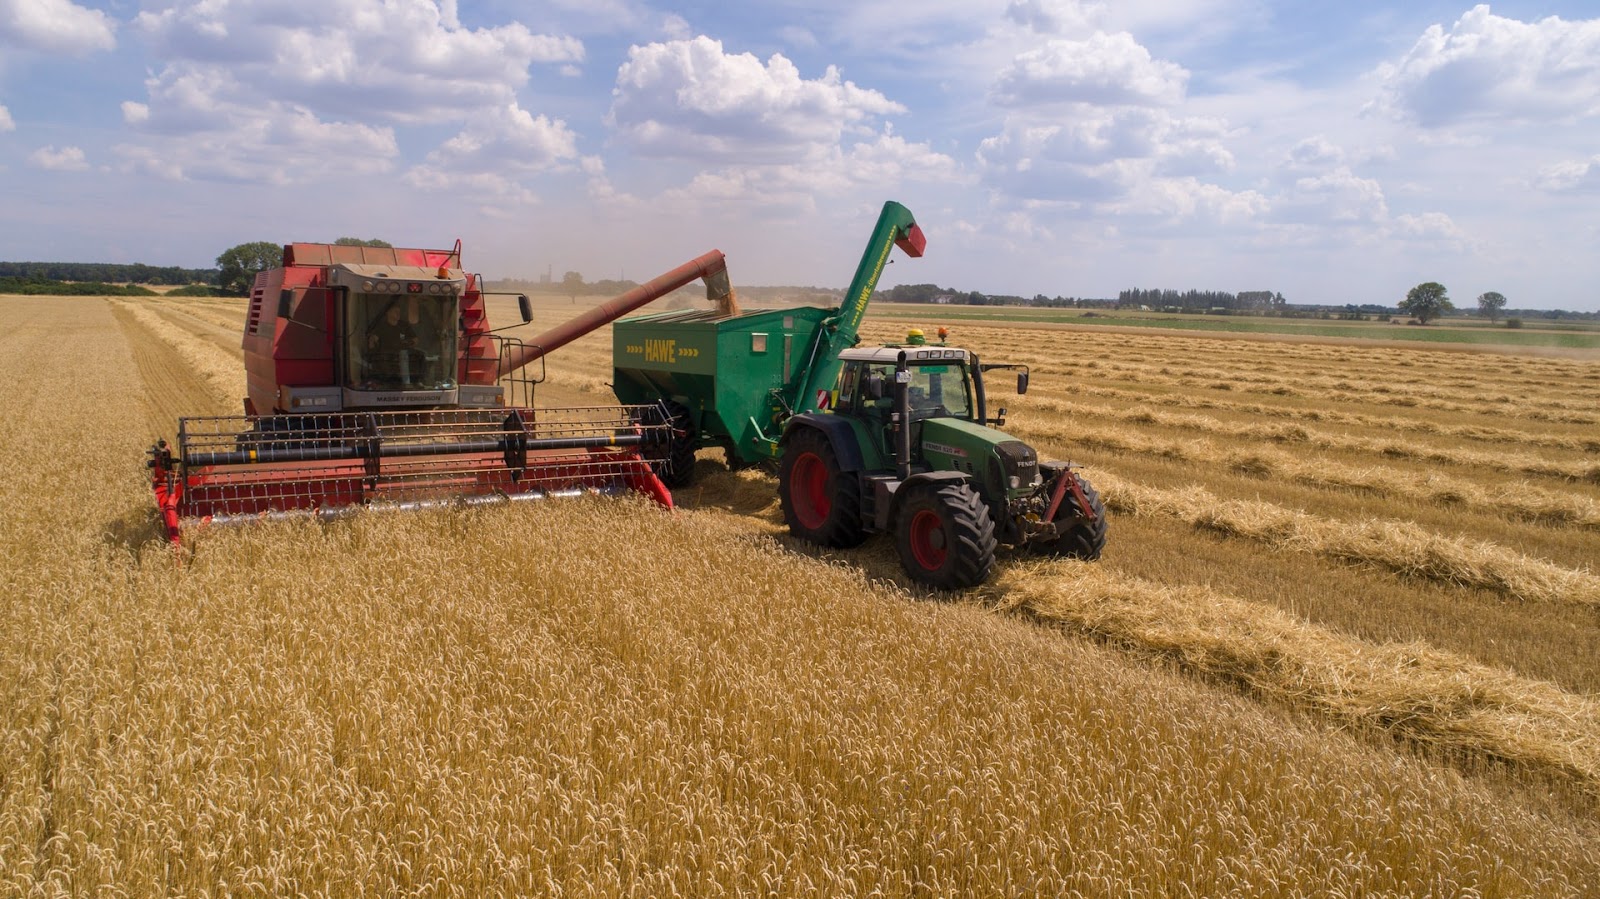 Incrementa tu rentabilidad en el cultivo de trigo